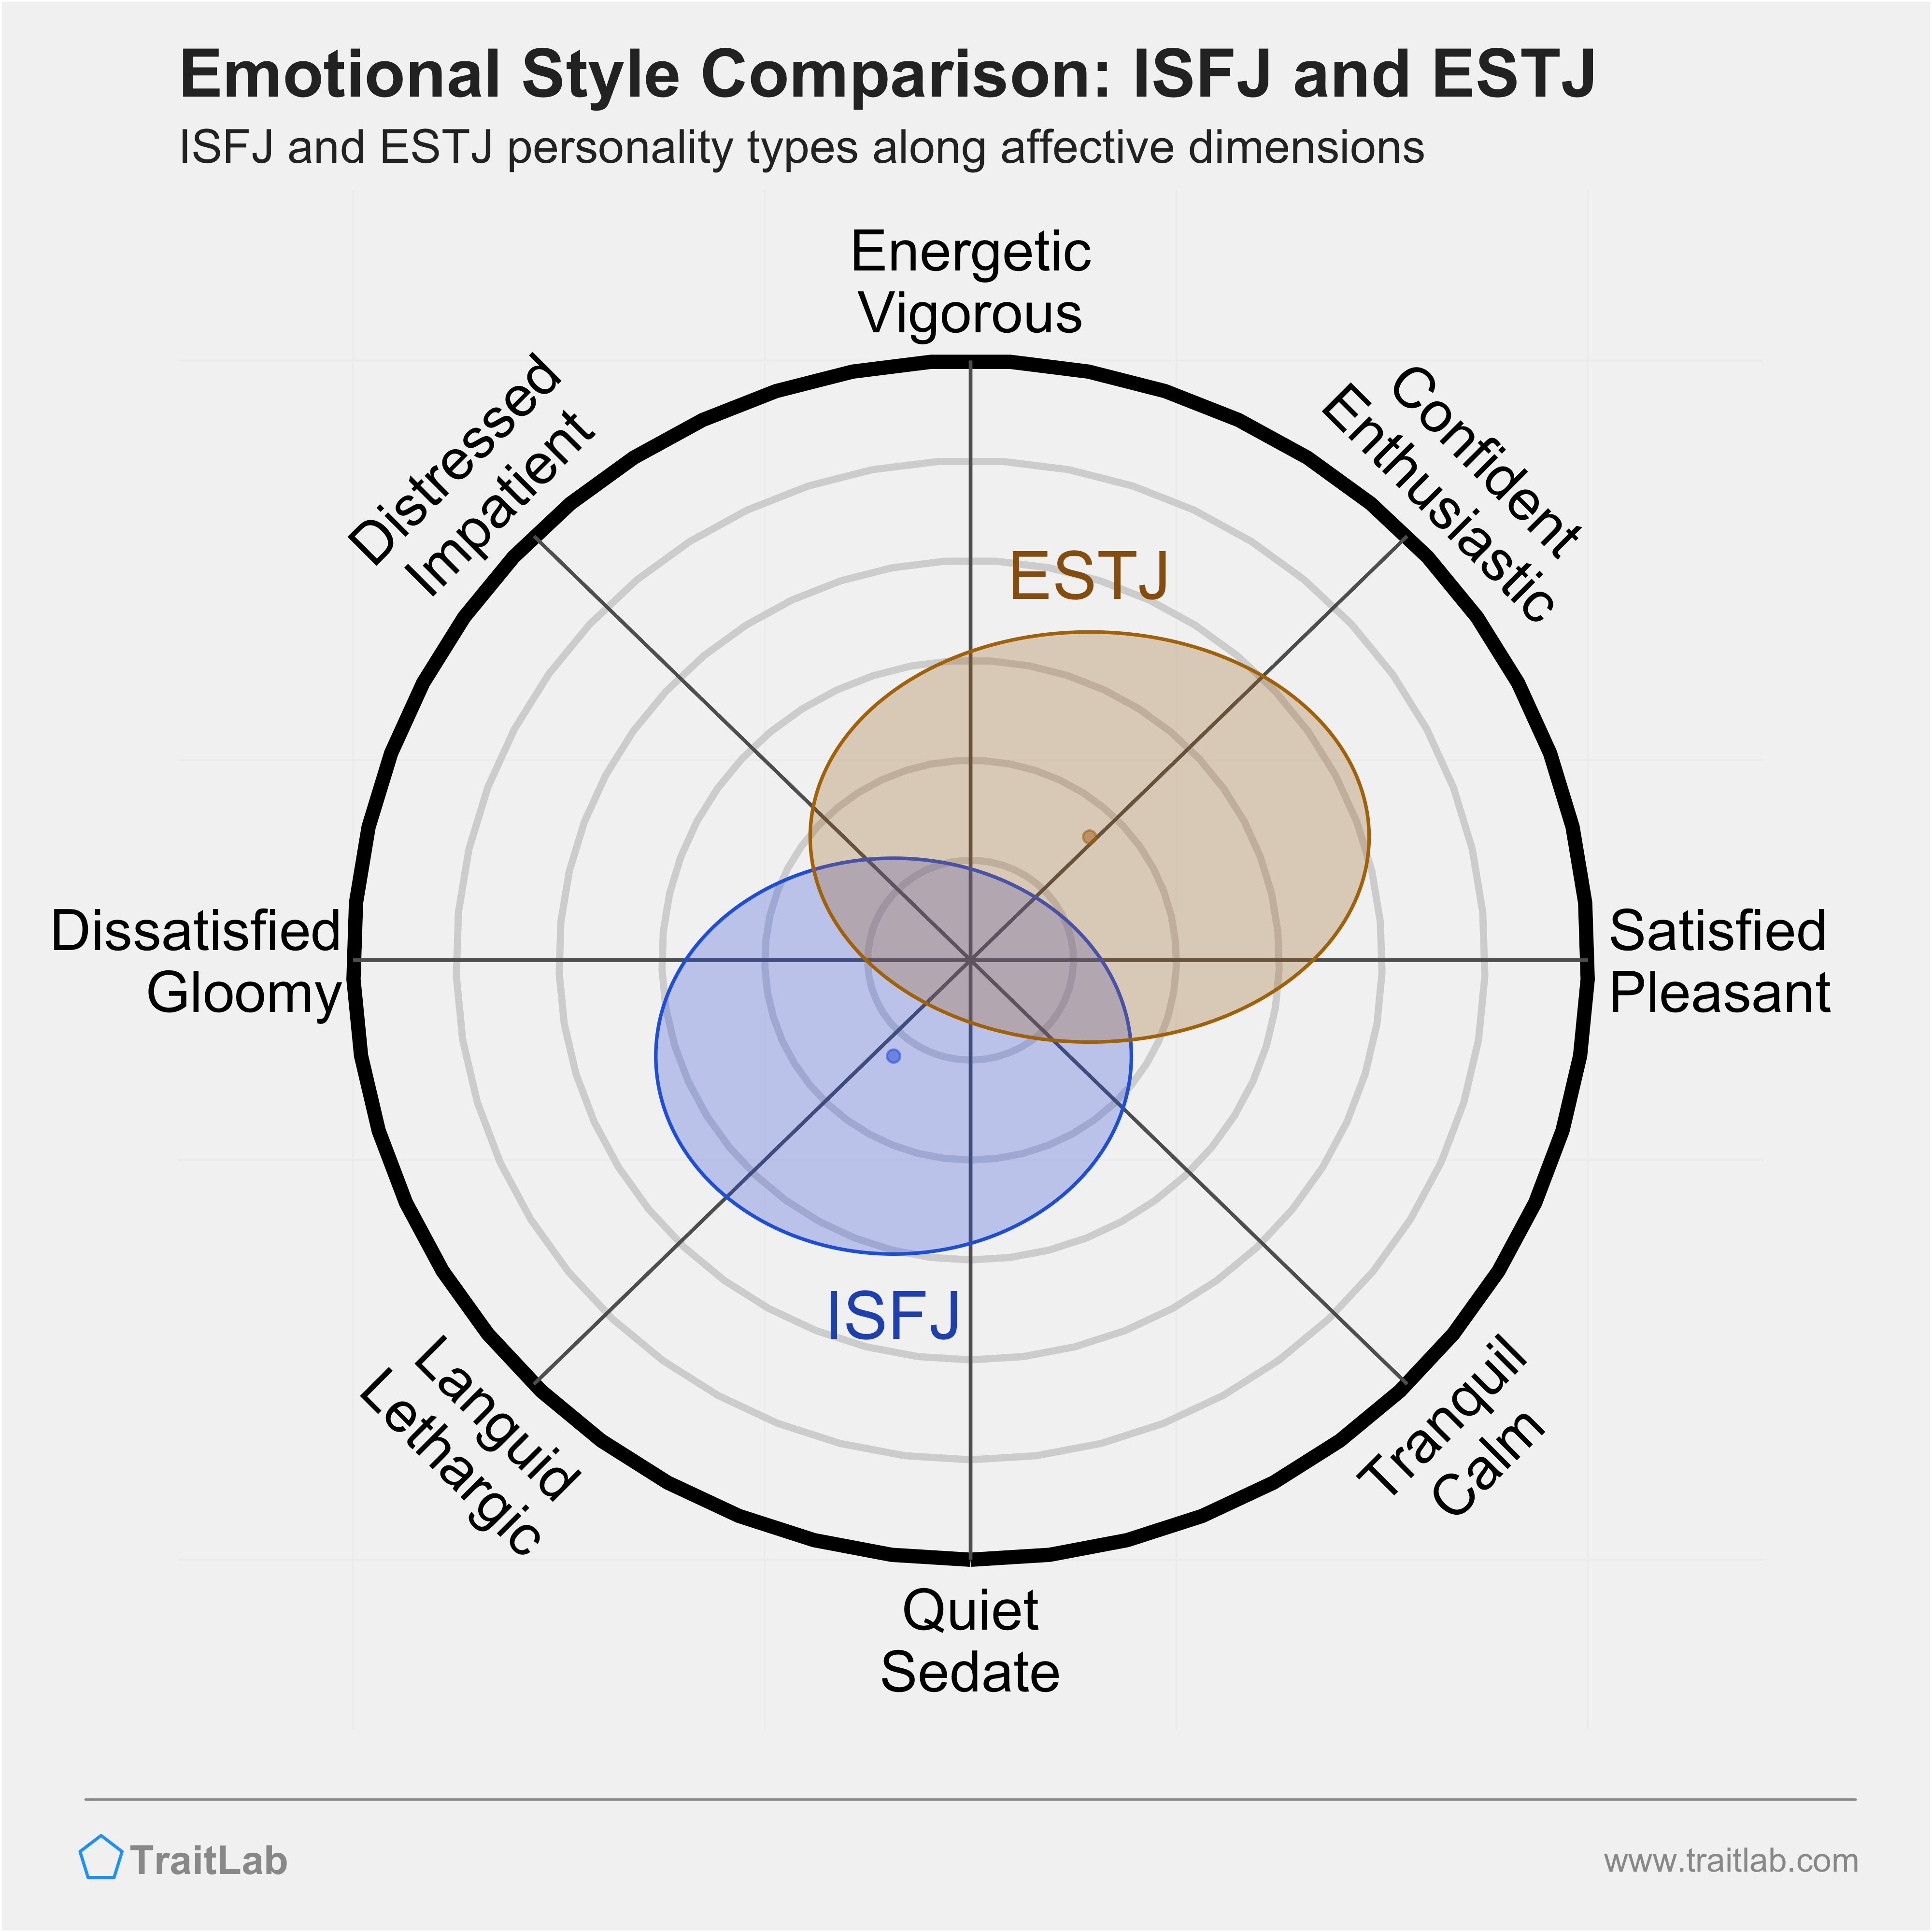 ISFJ and ESTJ comparison across emotional (affective) dimensions